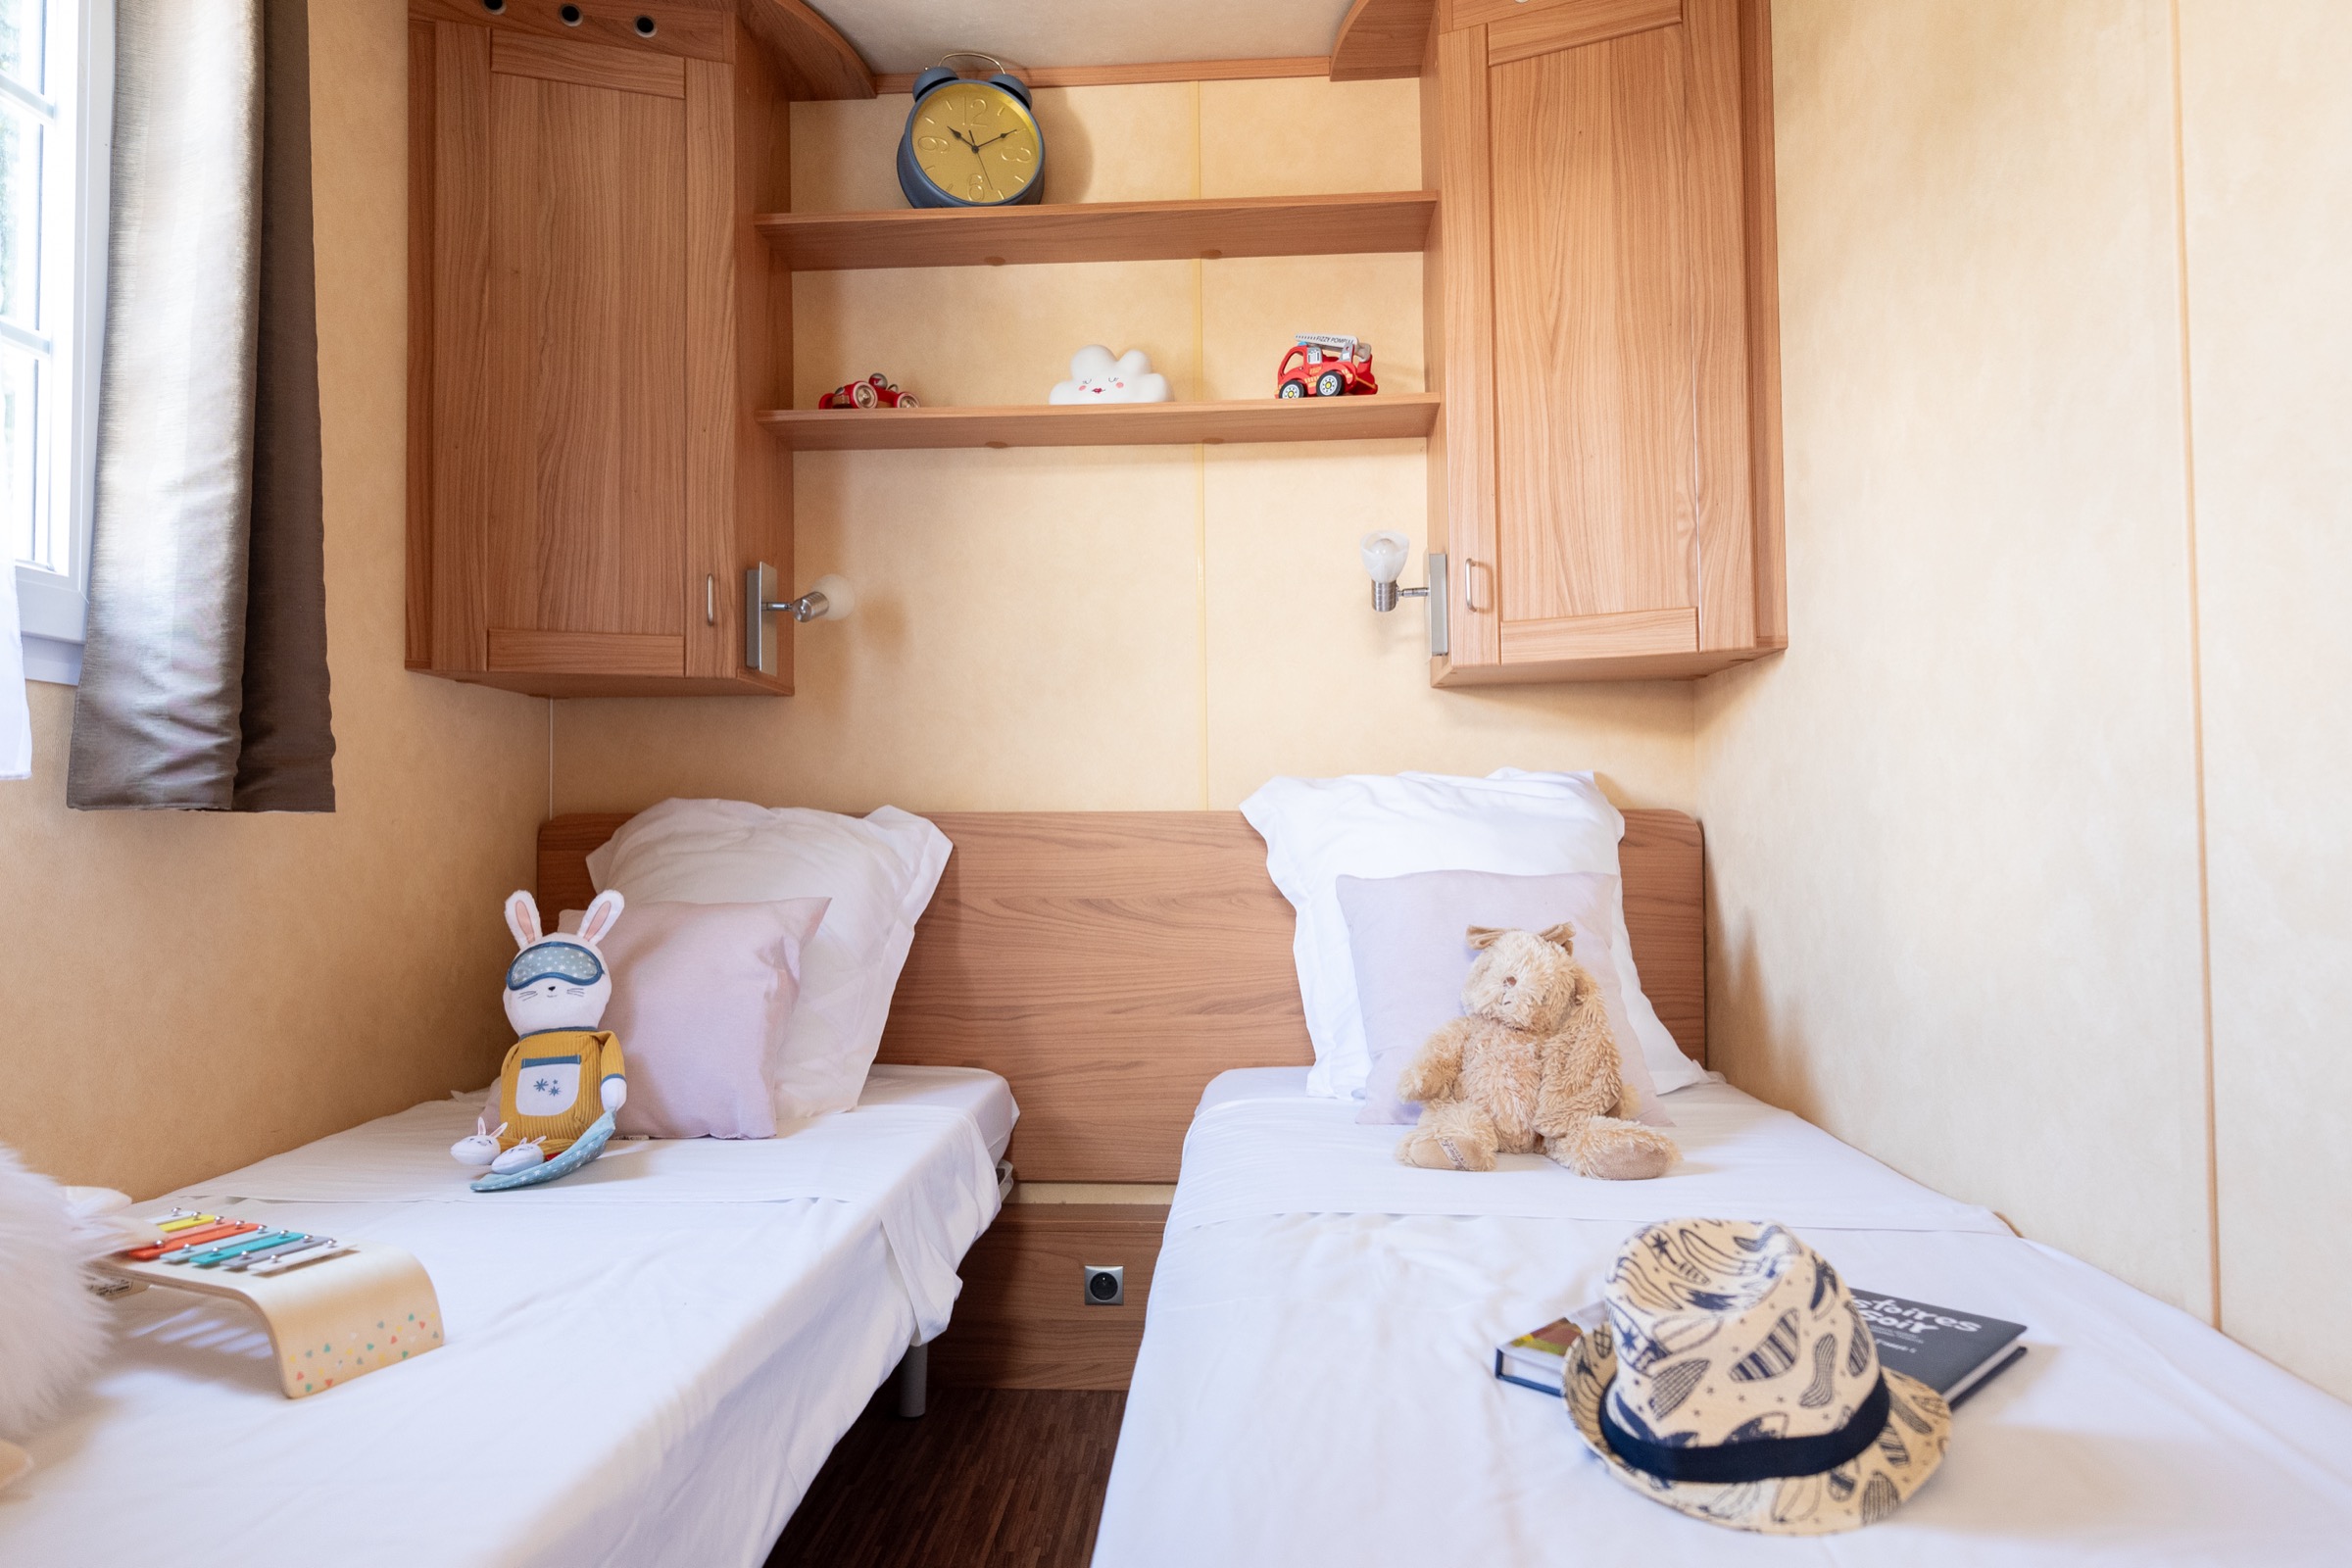 Cottage Prestige 40 m² – 3 bedrooms (bedlinen and towels inclued) 4/6 Ppl.